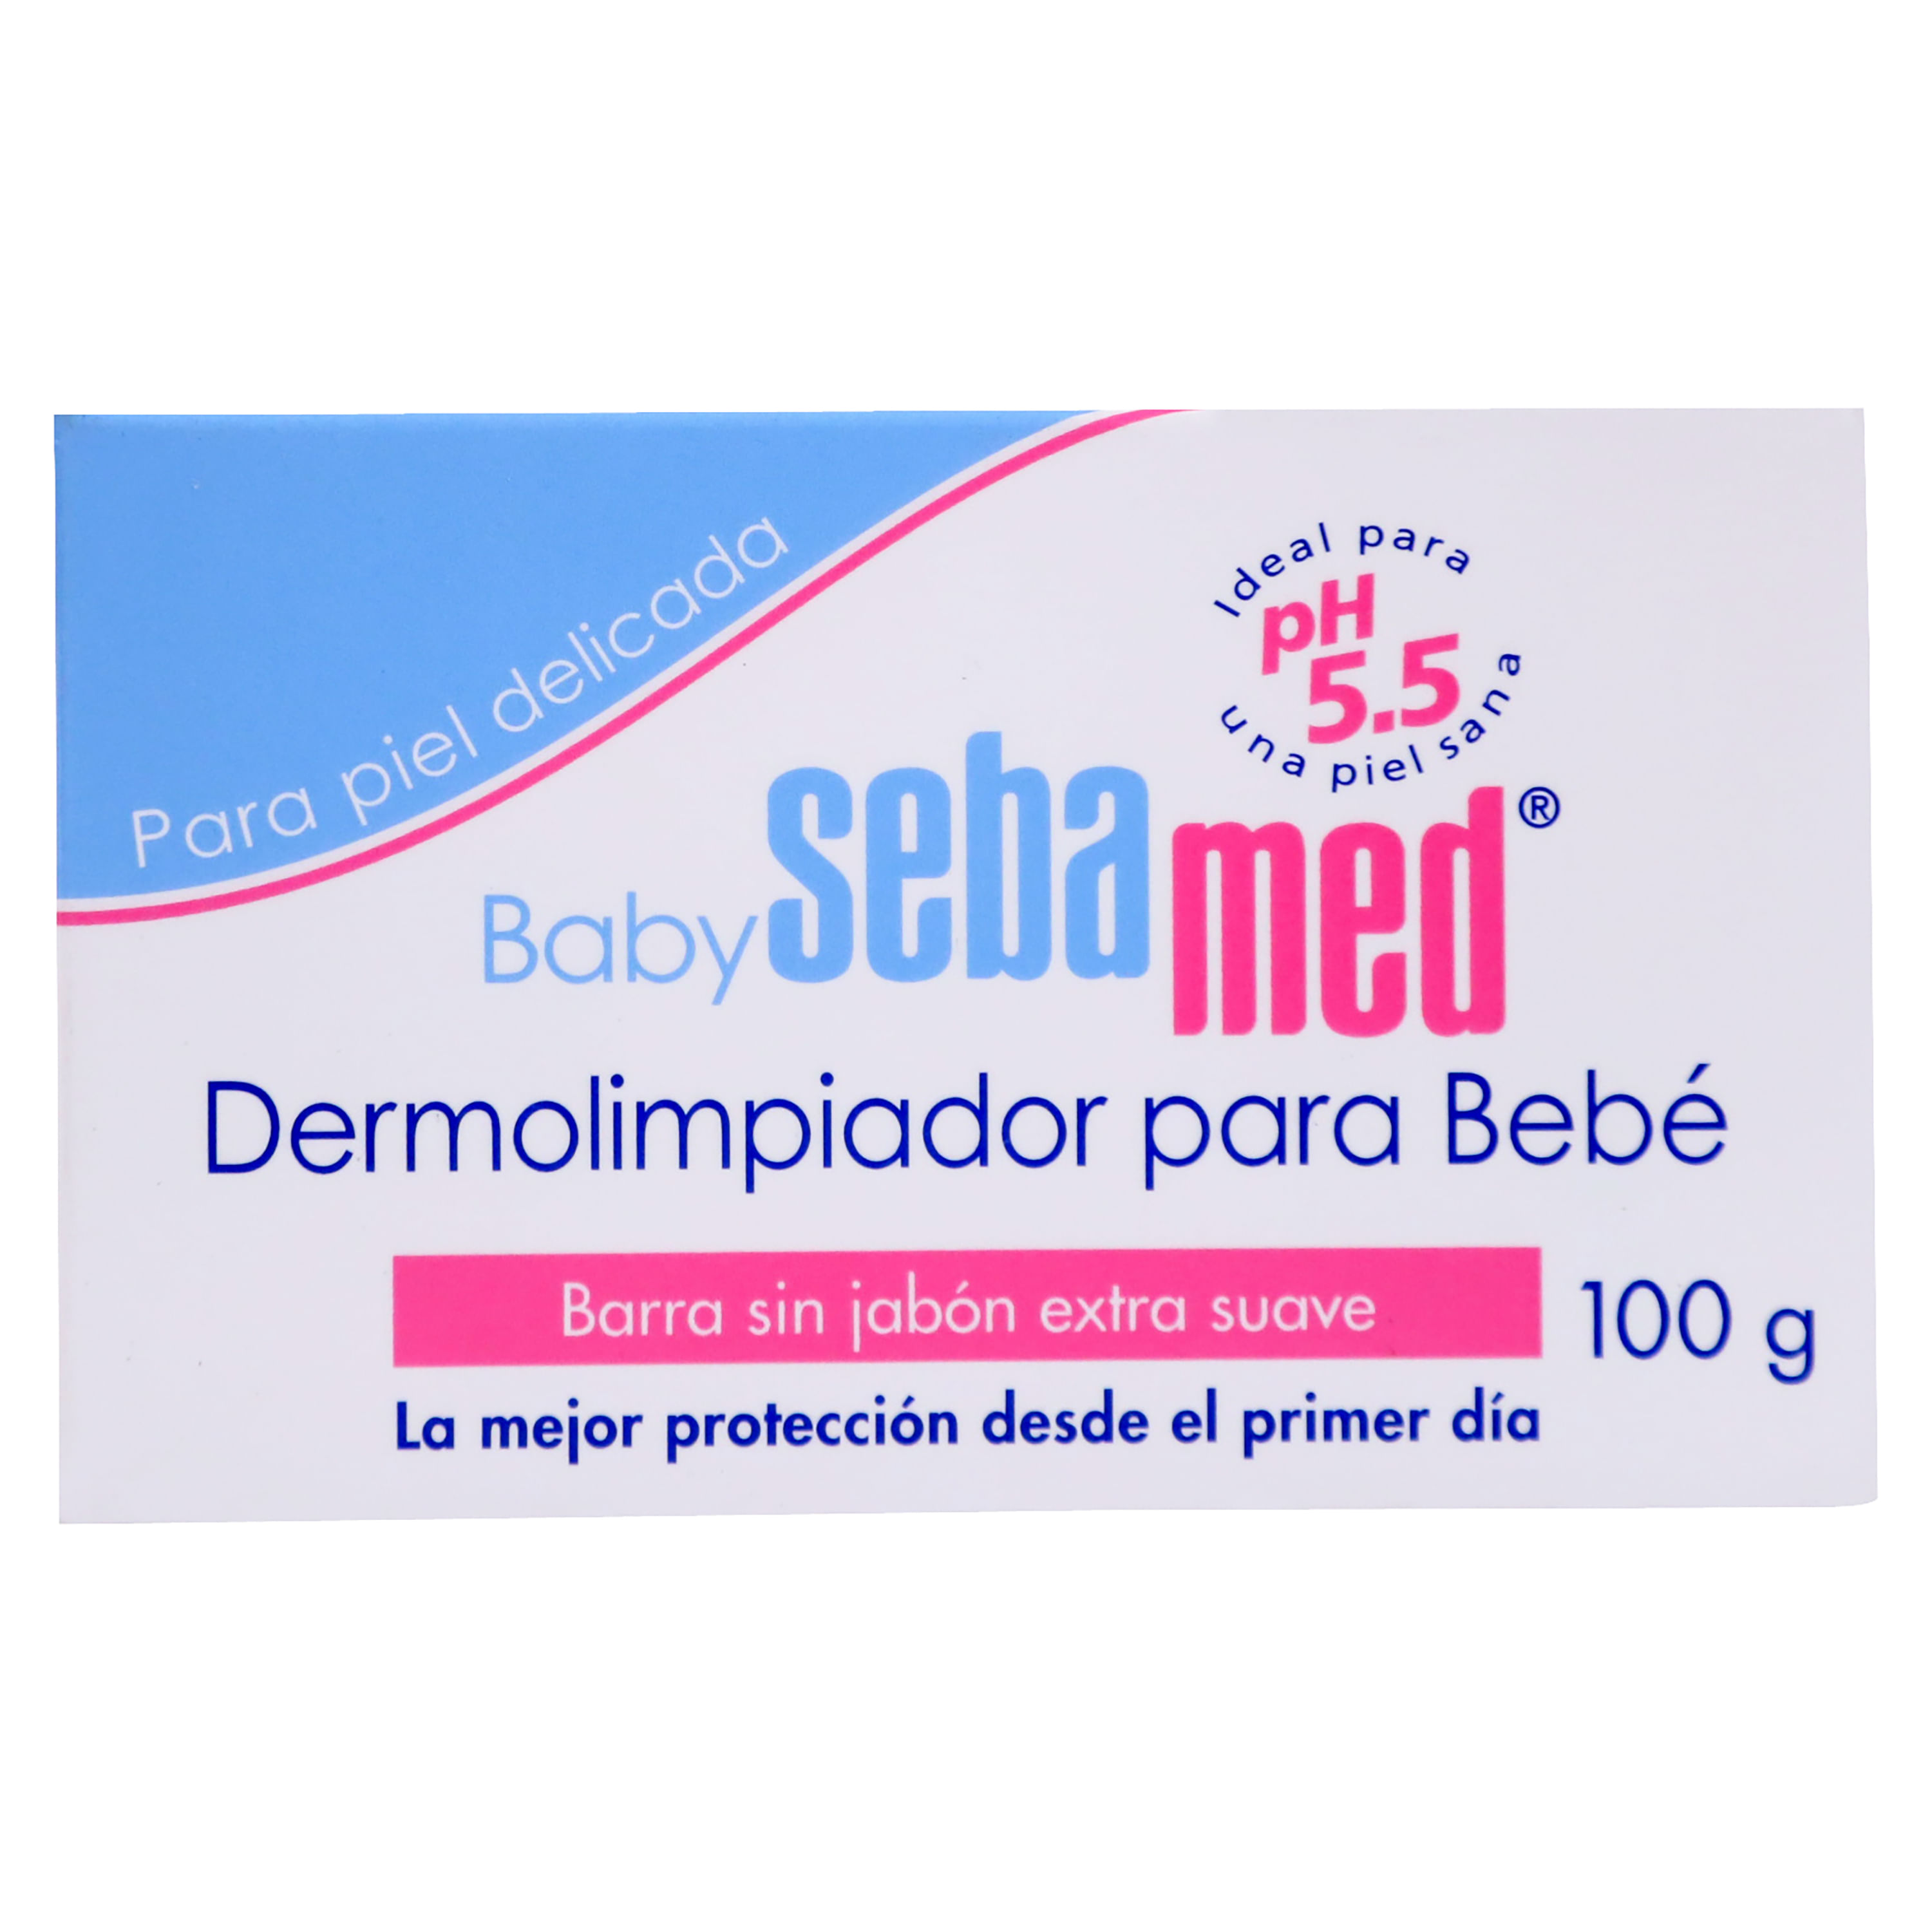 Baby-Sebamed-Dermolimpiador-100G-X-Caja-Baby-Sebamed-Dermolimpiador-100G-1-48117